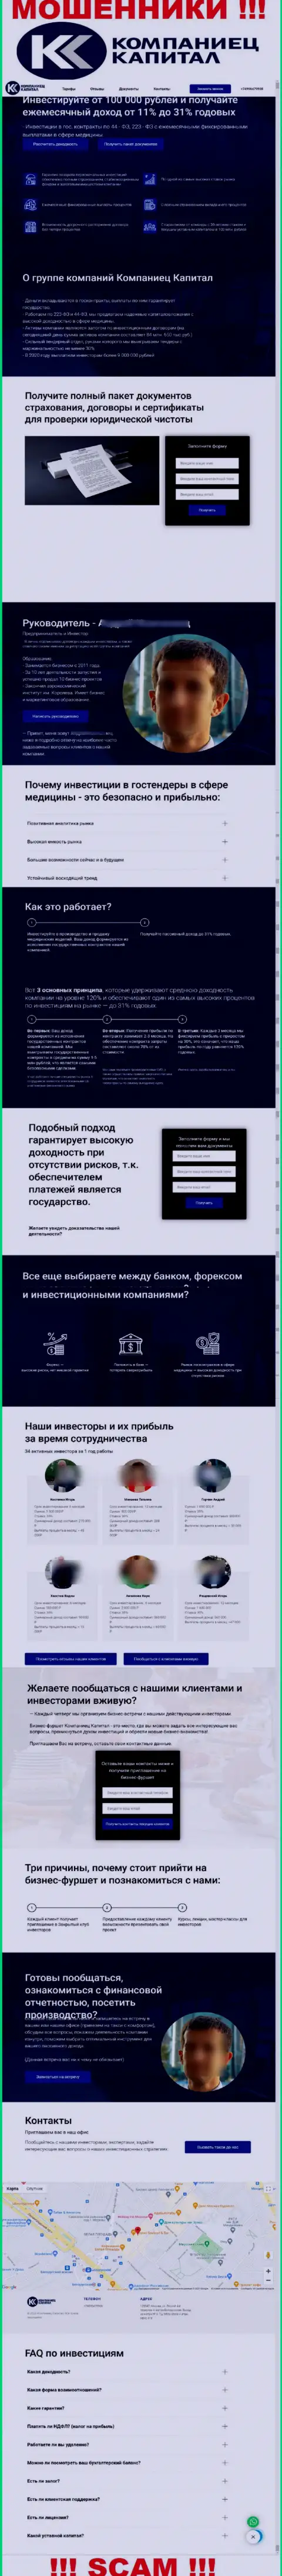 Если же не желаете стать пострадавшими от мошеннических действий KompanietsCapital, то тогда лучше на Kompaniets-Capital Ru не заходить